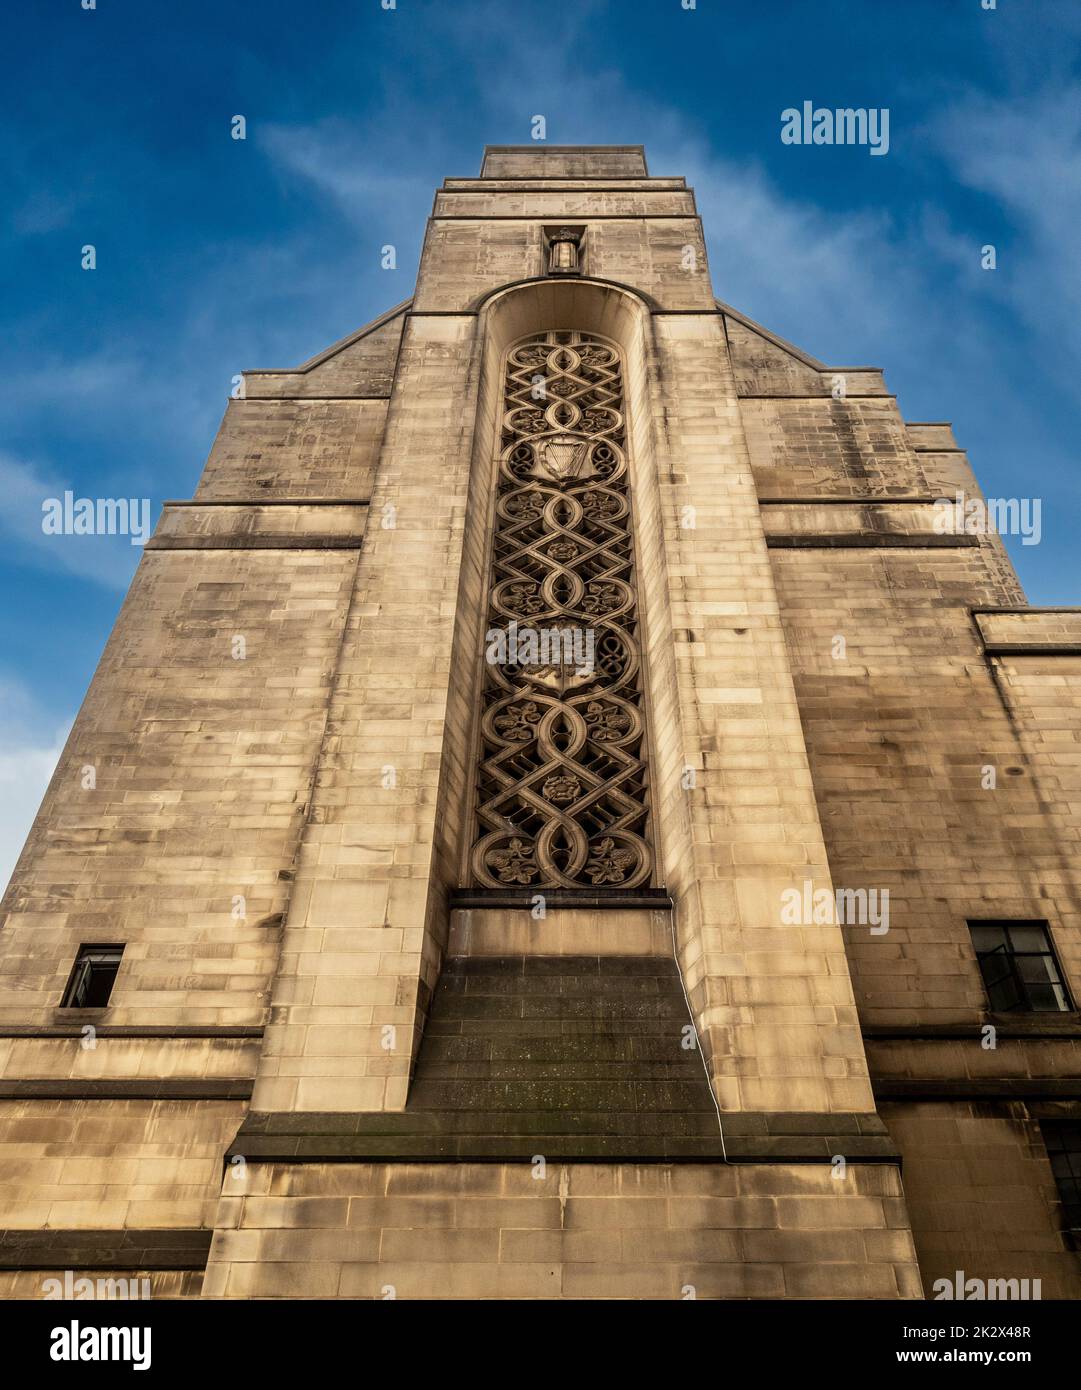 Extension de l'hôtel de ville des fenêtres géométriques élaborées. Tir depuis le sol en regardant vers le haut. Manchester. ROYAUME-UNI Banque D'Images